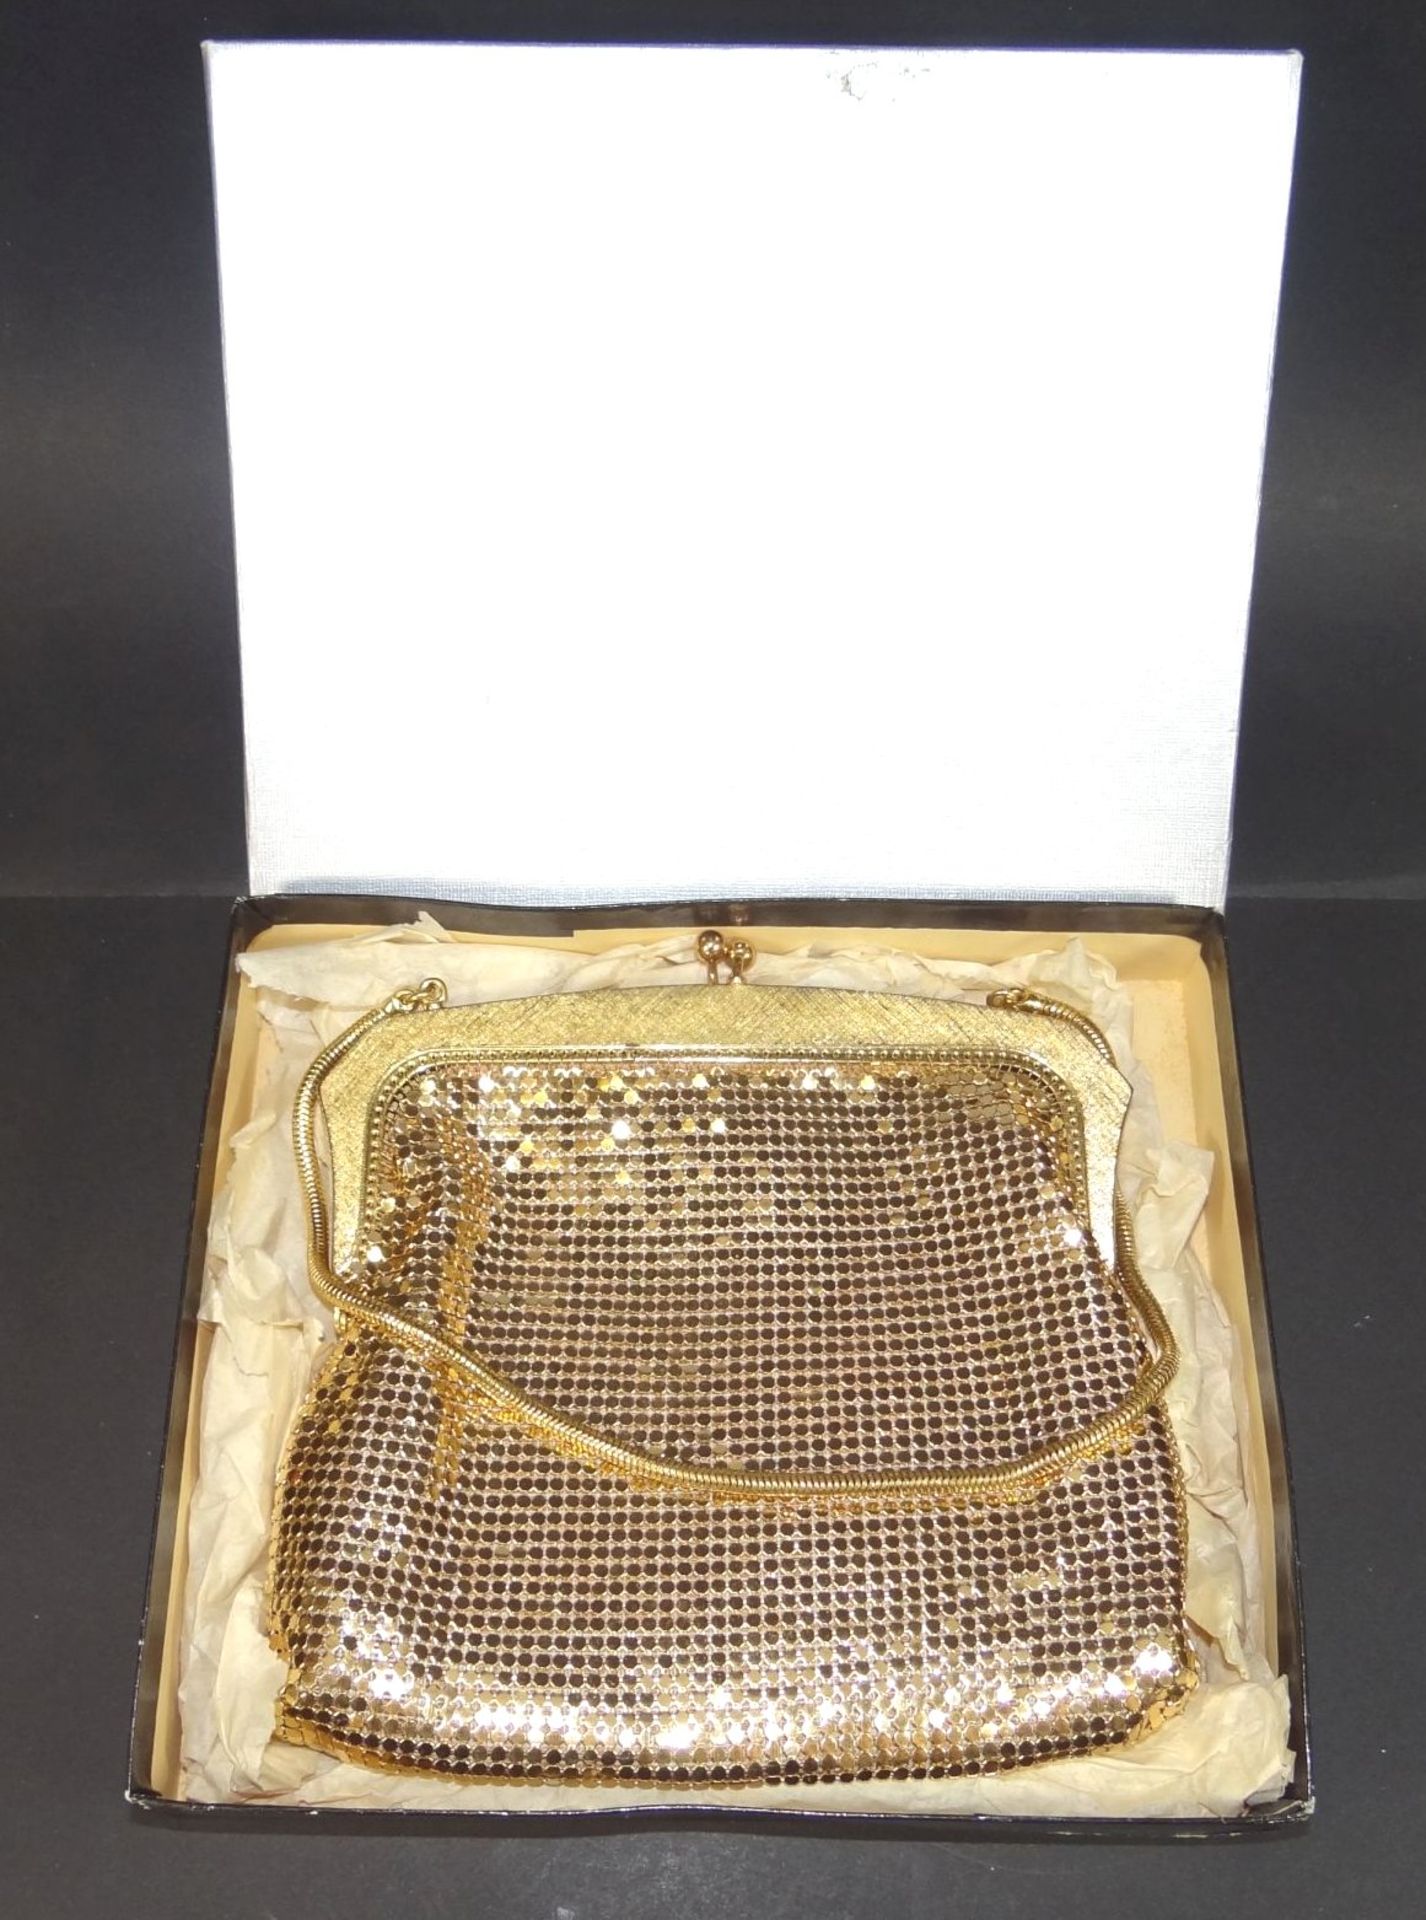 kl. Pailletten-Abendtasche, vergoldet, neuwertig in orig. Karton, 16x15 cm - Bild 4 aus 5